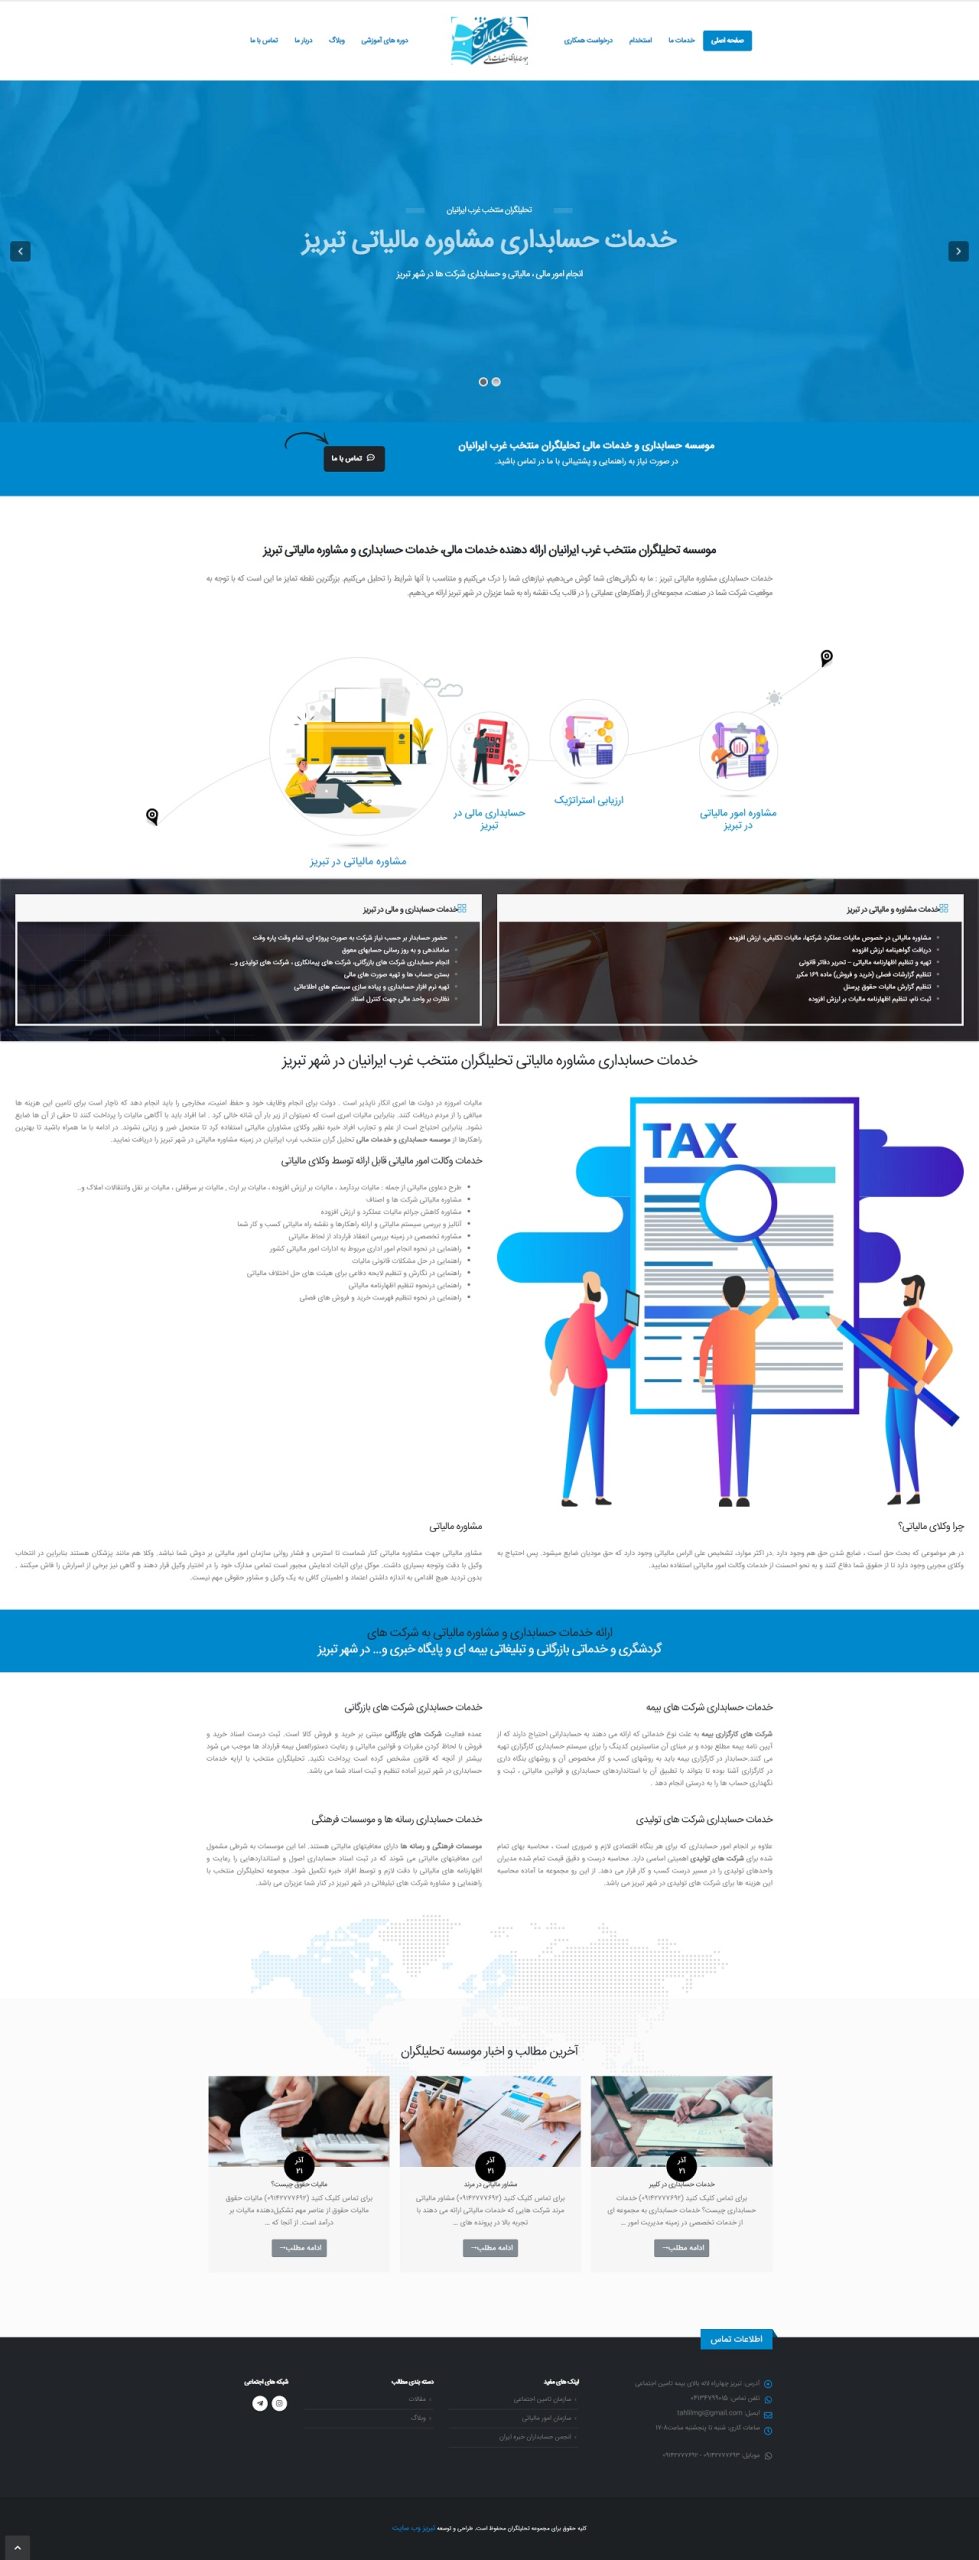 طراحی سایت حسابداری